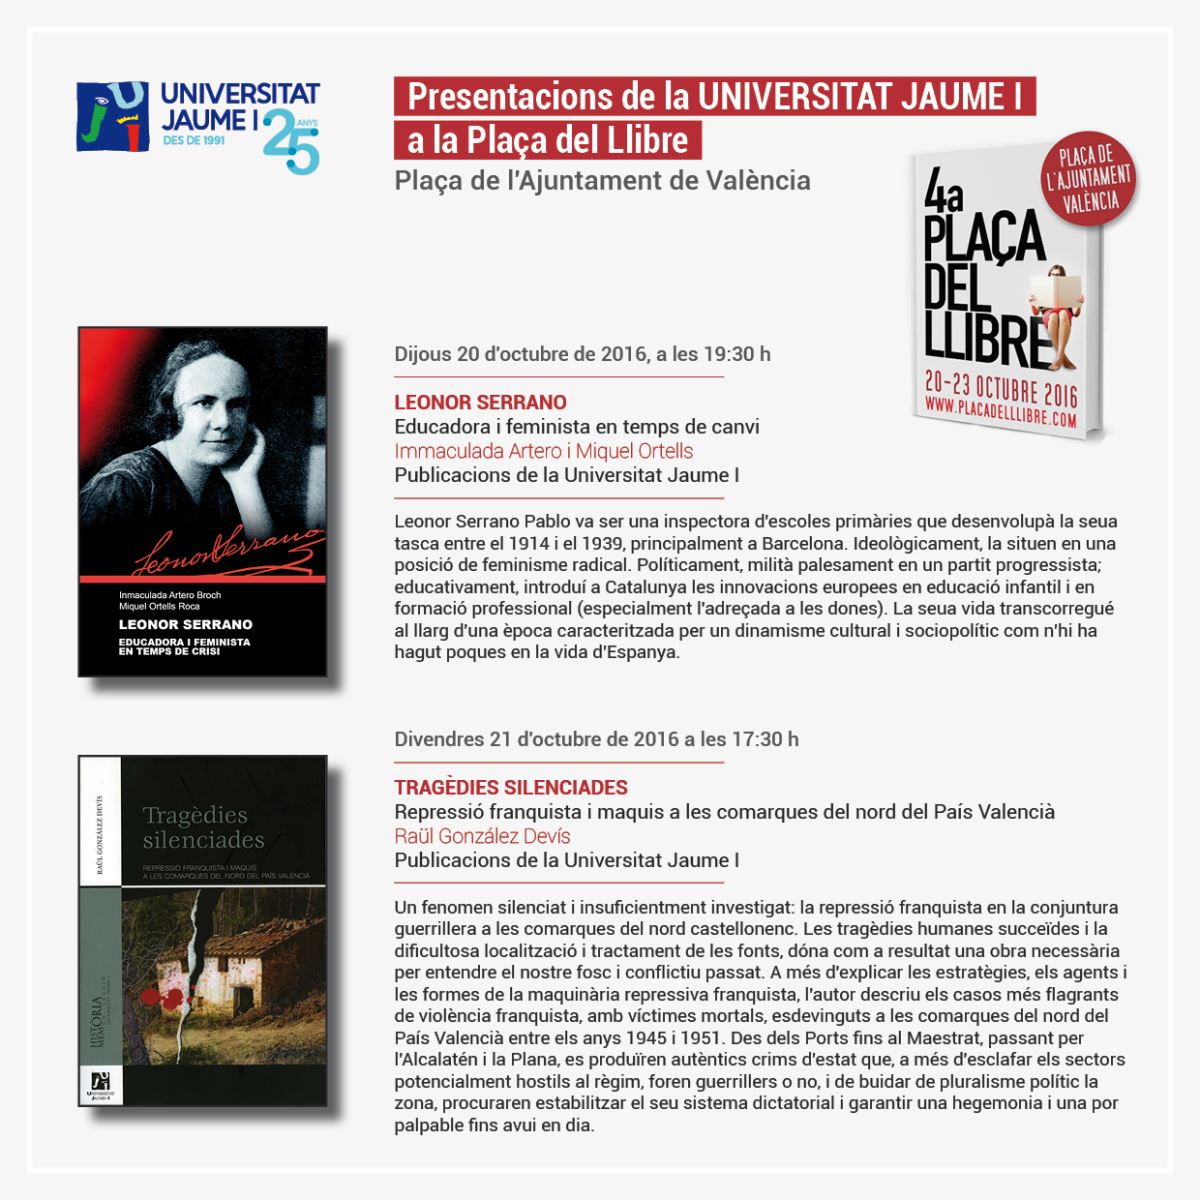 Publicacions de la Universitat Jaume I presenta dos de sus novedades en la Plaça del Llibre 2016